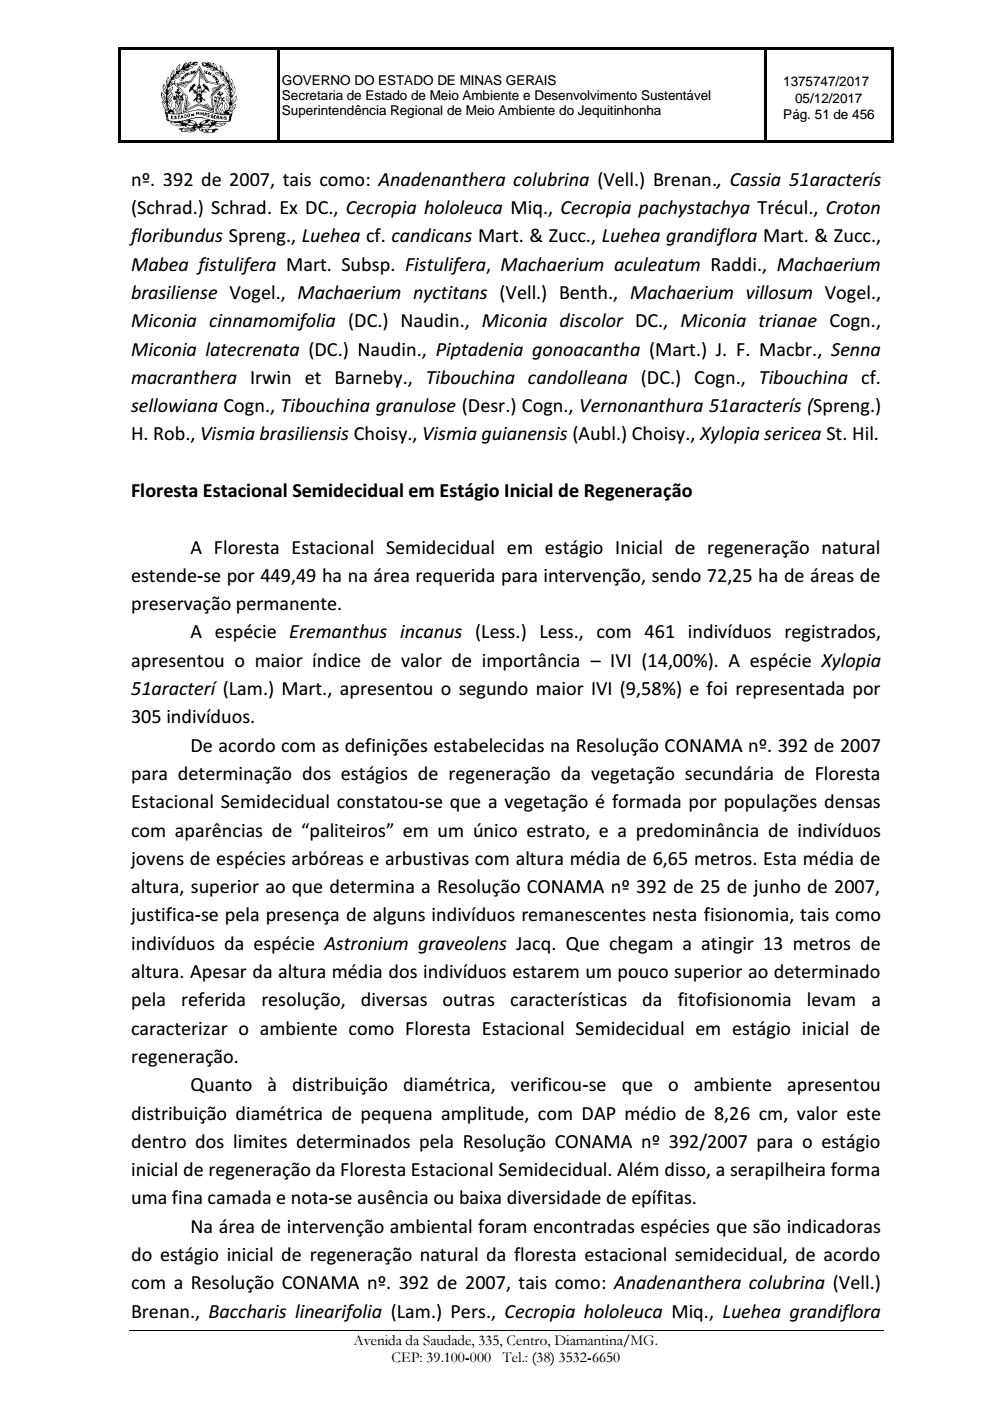 Page 51 from Parecer único da Secretaria de estado de Meio Ambiente e Desenvolvimento Sustentável (SEMAD)